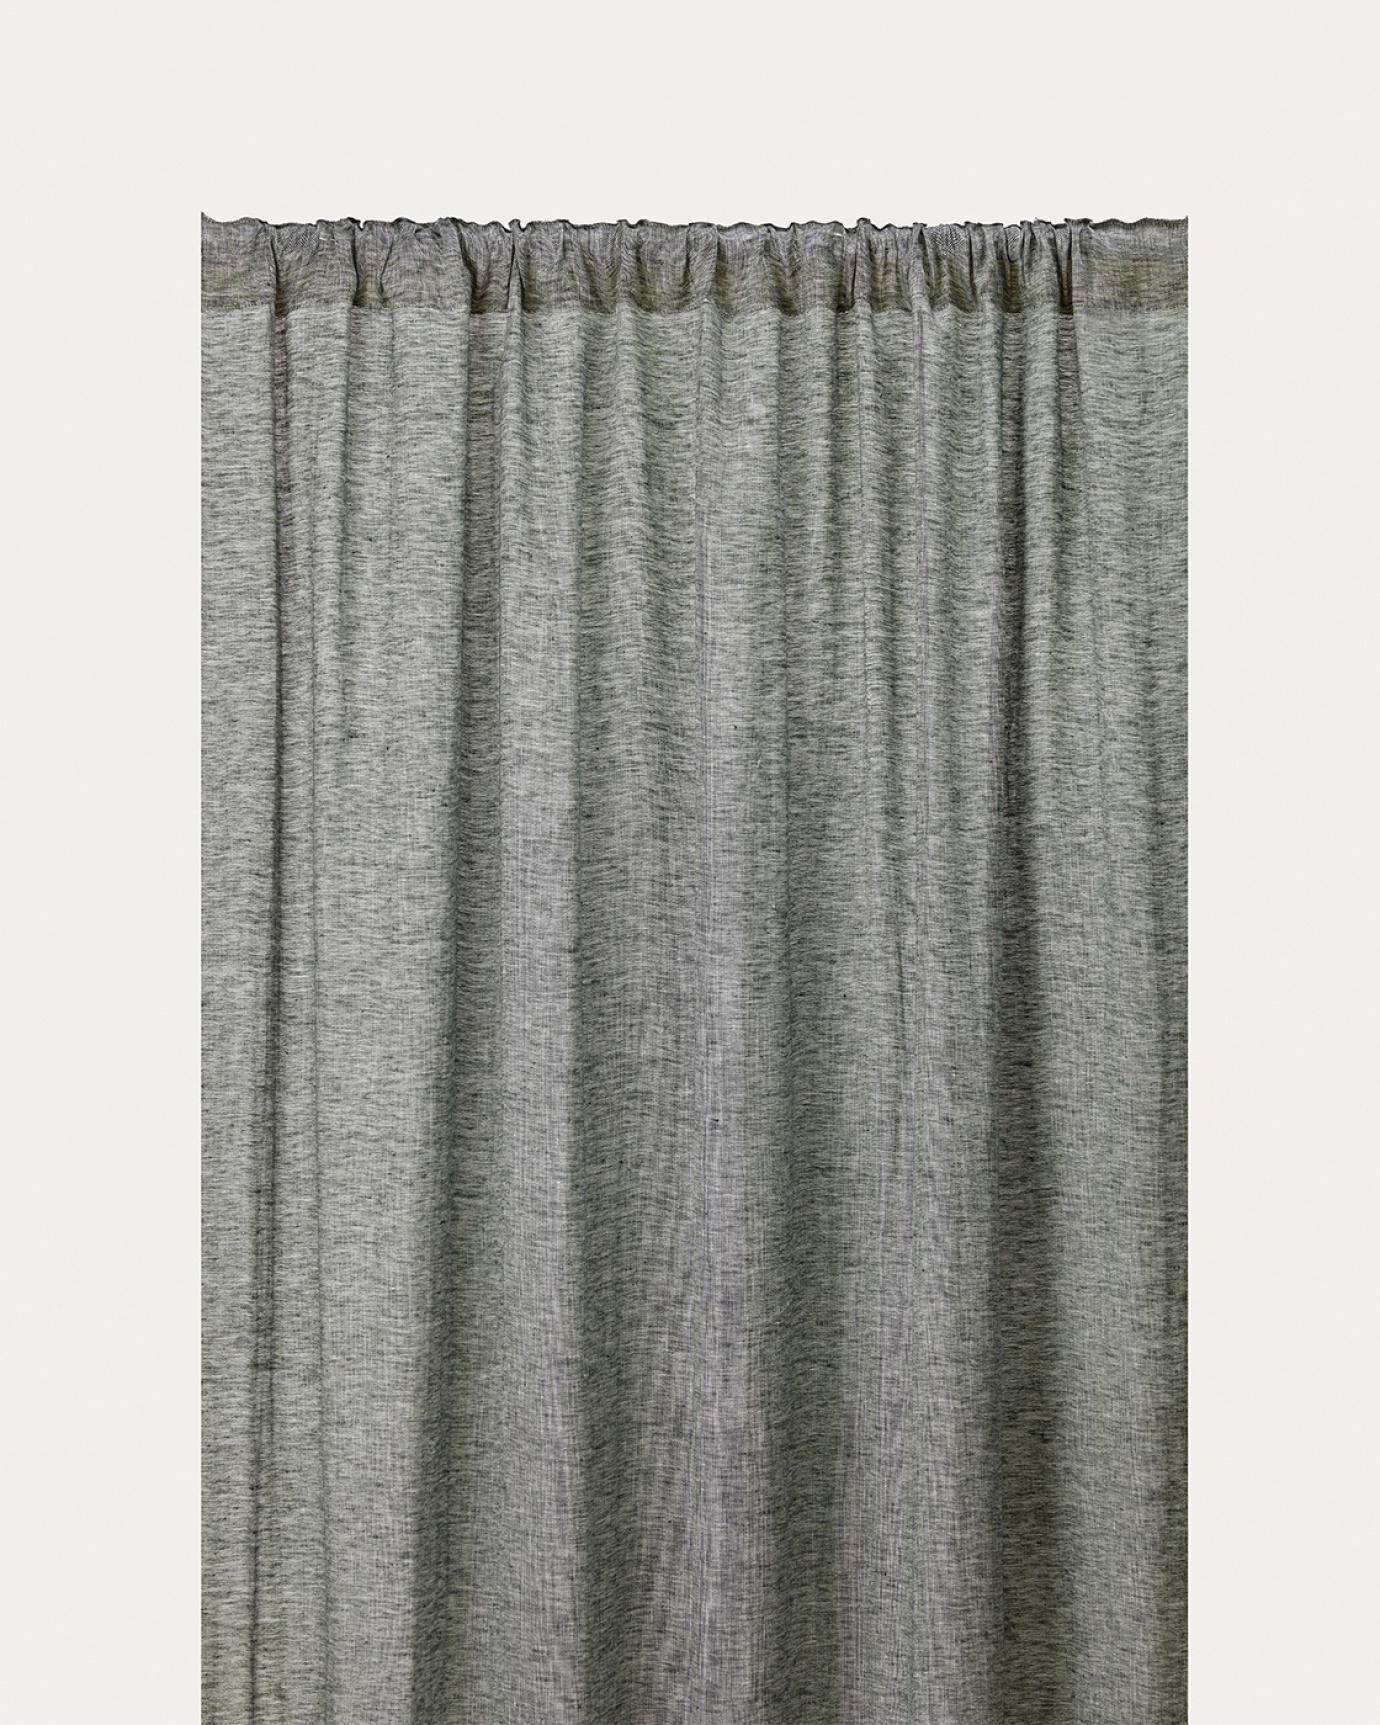 Produktbild djup smaragdsgrön INTERMEZZO gardin av skirt linne med färdiga veckband från LINUM DESIGN. Storlek 140x290 cm och säljs i 2-pack.